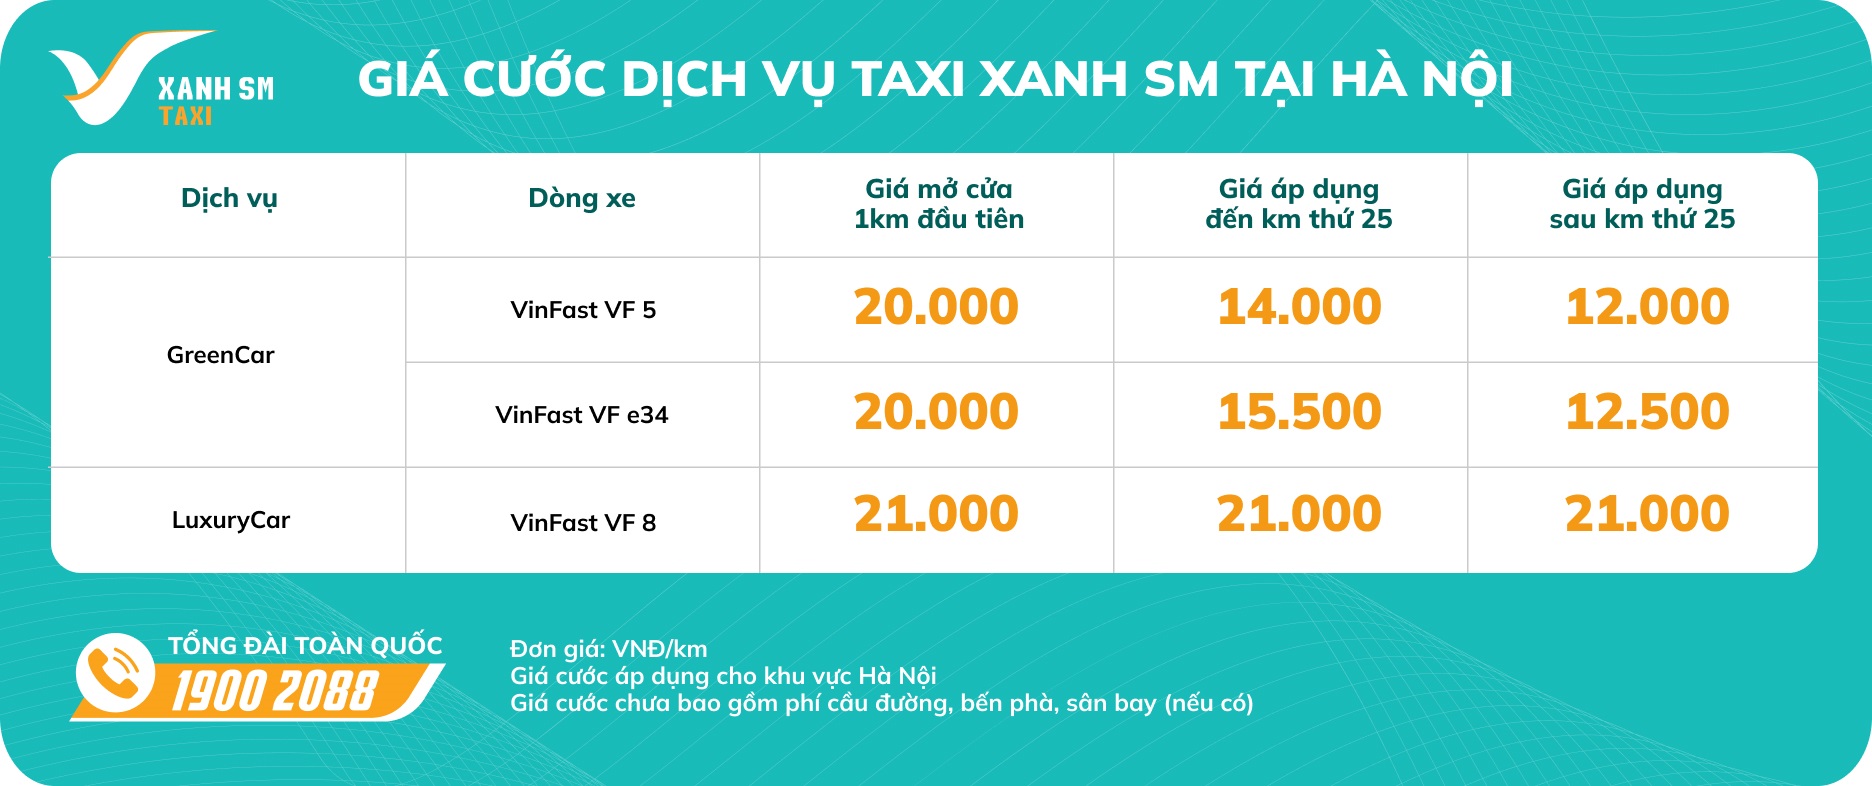 Giá cước dịch vụ Taxi Xanh SM tại Hà Nội